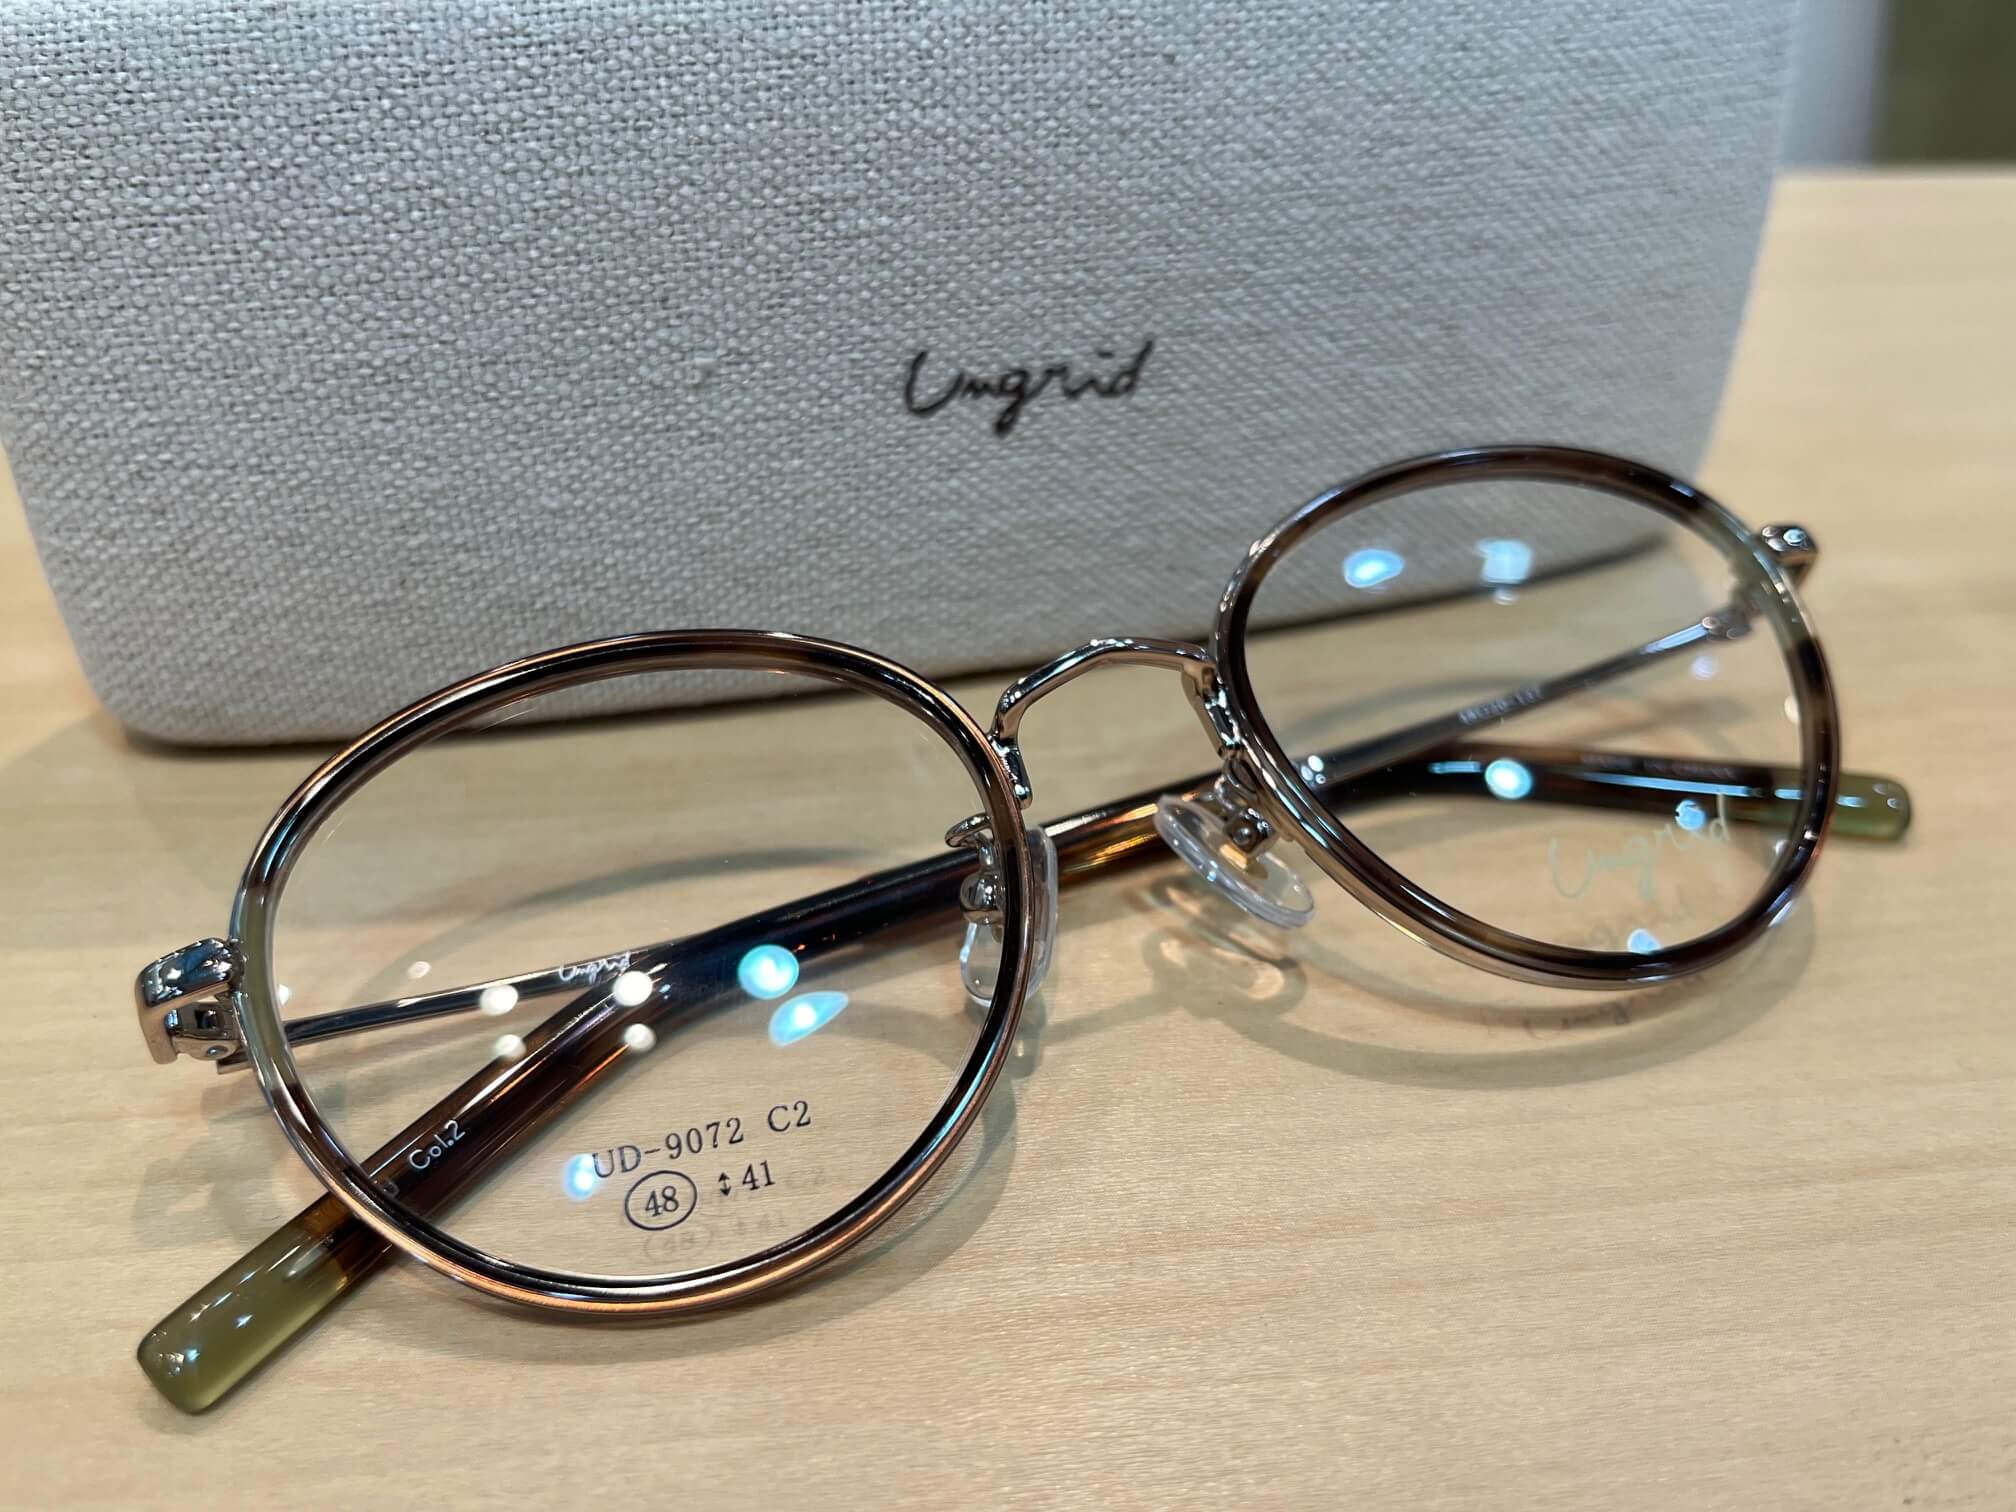 アングリッドUD-9072昔風レトロタイプのおしゃれ女性メガネです。